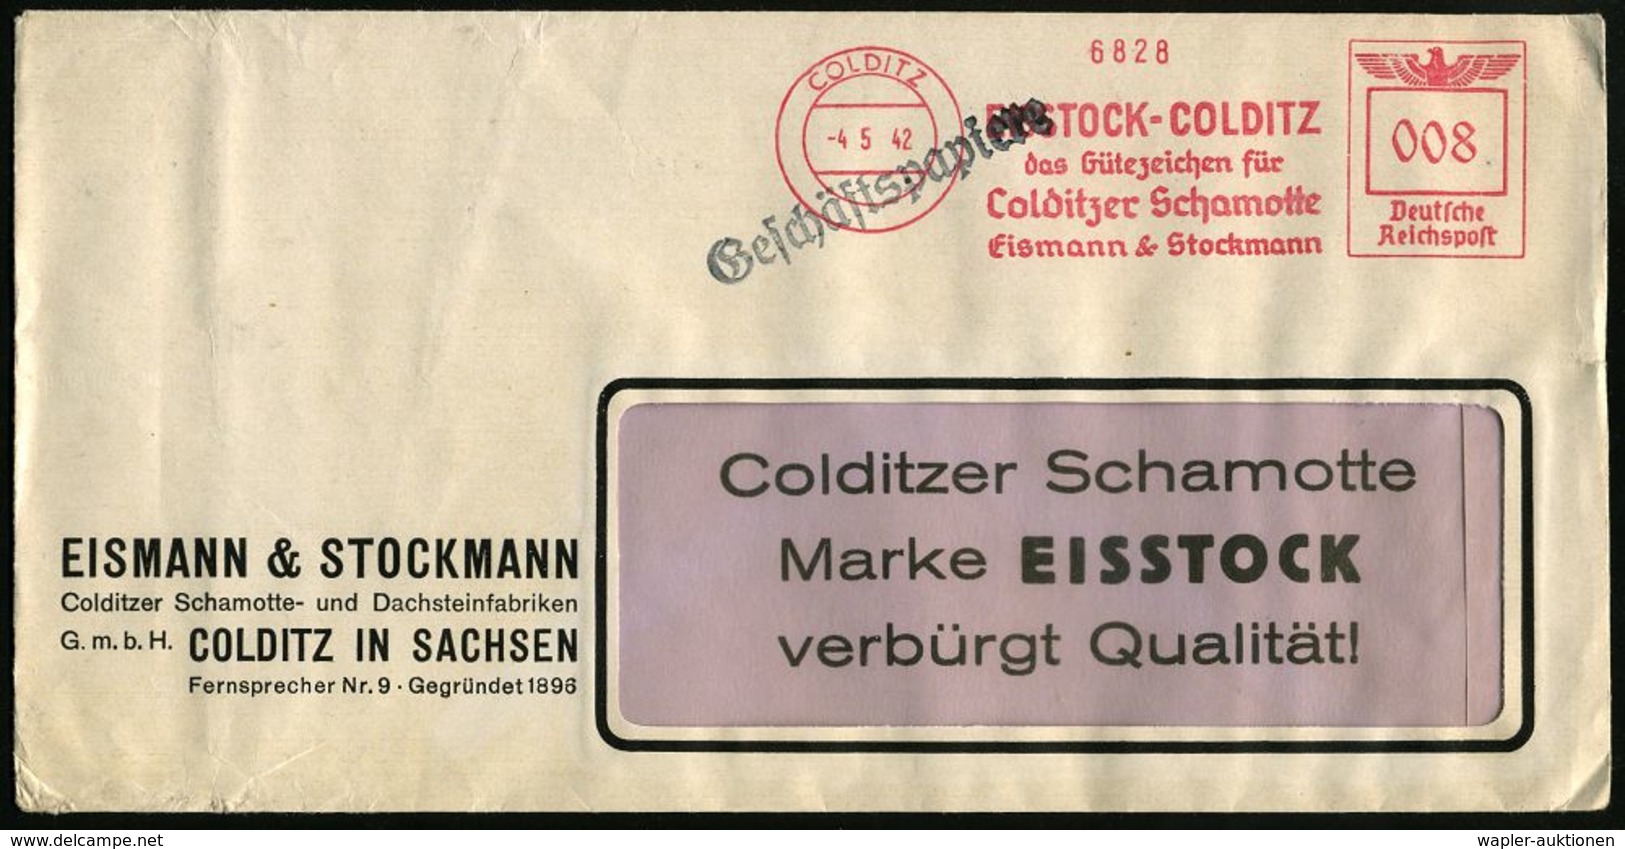 KLIMATECHNIK ( WÄRME- & KÄLTE) : COLDITZ/ EISSTOCK-COLDITZ/ ..Colditzer Schamotte/ Eismann & Stockmann 1942 (4.5.) AFS A - Ohne Zuordnung